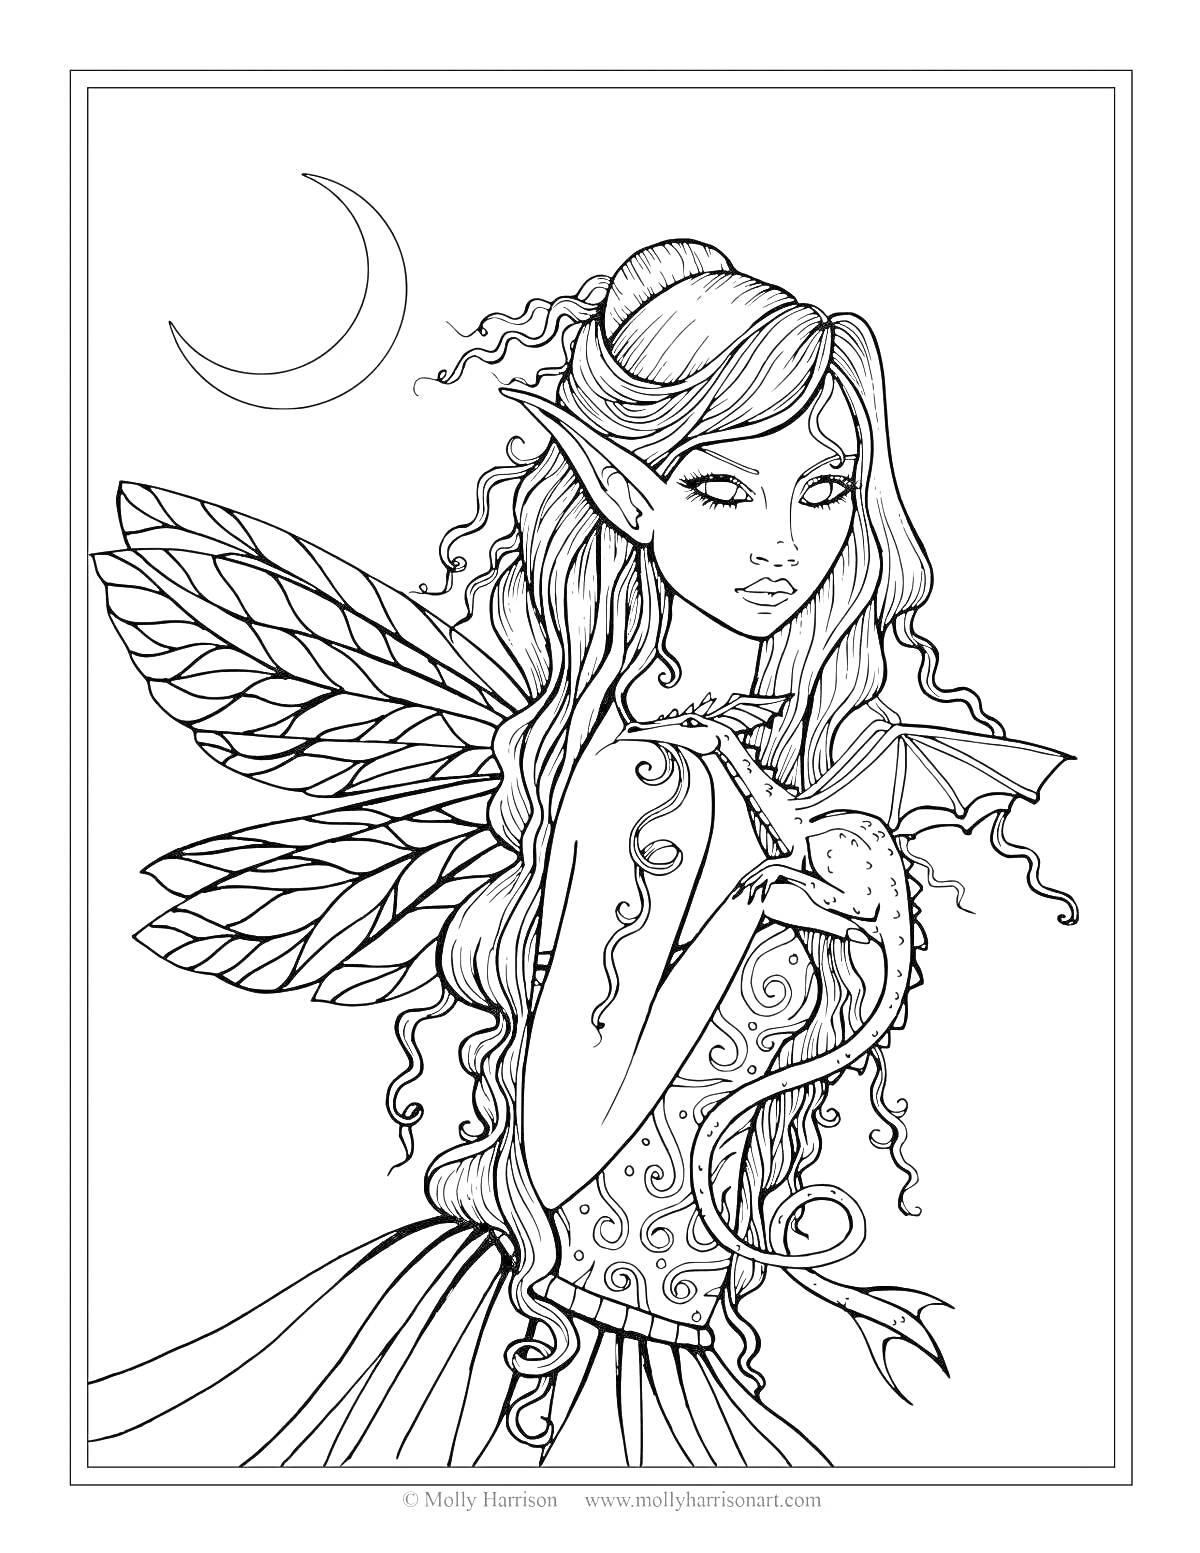 Раскраска Фея с длинными волосами, в платье с узорами, с крыльями, обнимающая дракона, на фоне полумесяца